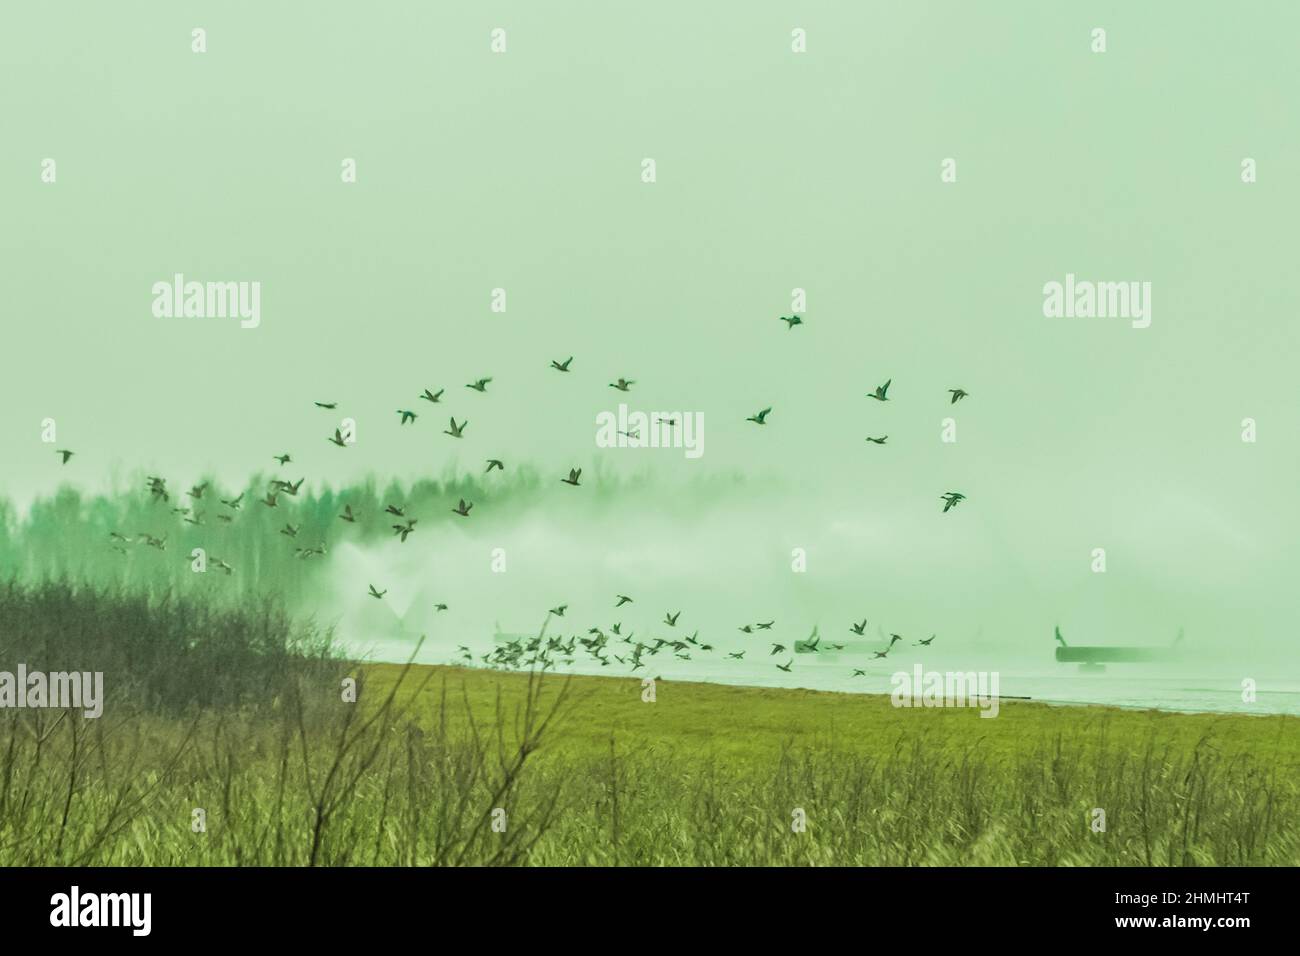 Vögel Tiere verlassen und fliegen weg von einer verschmutzten giftigen radioaktiven Zone im Feld. Stockfoto